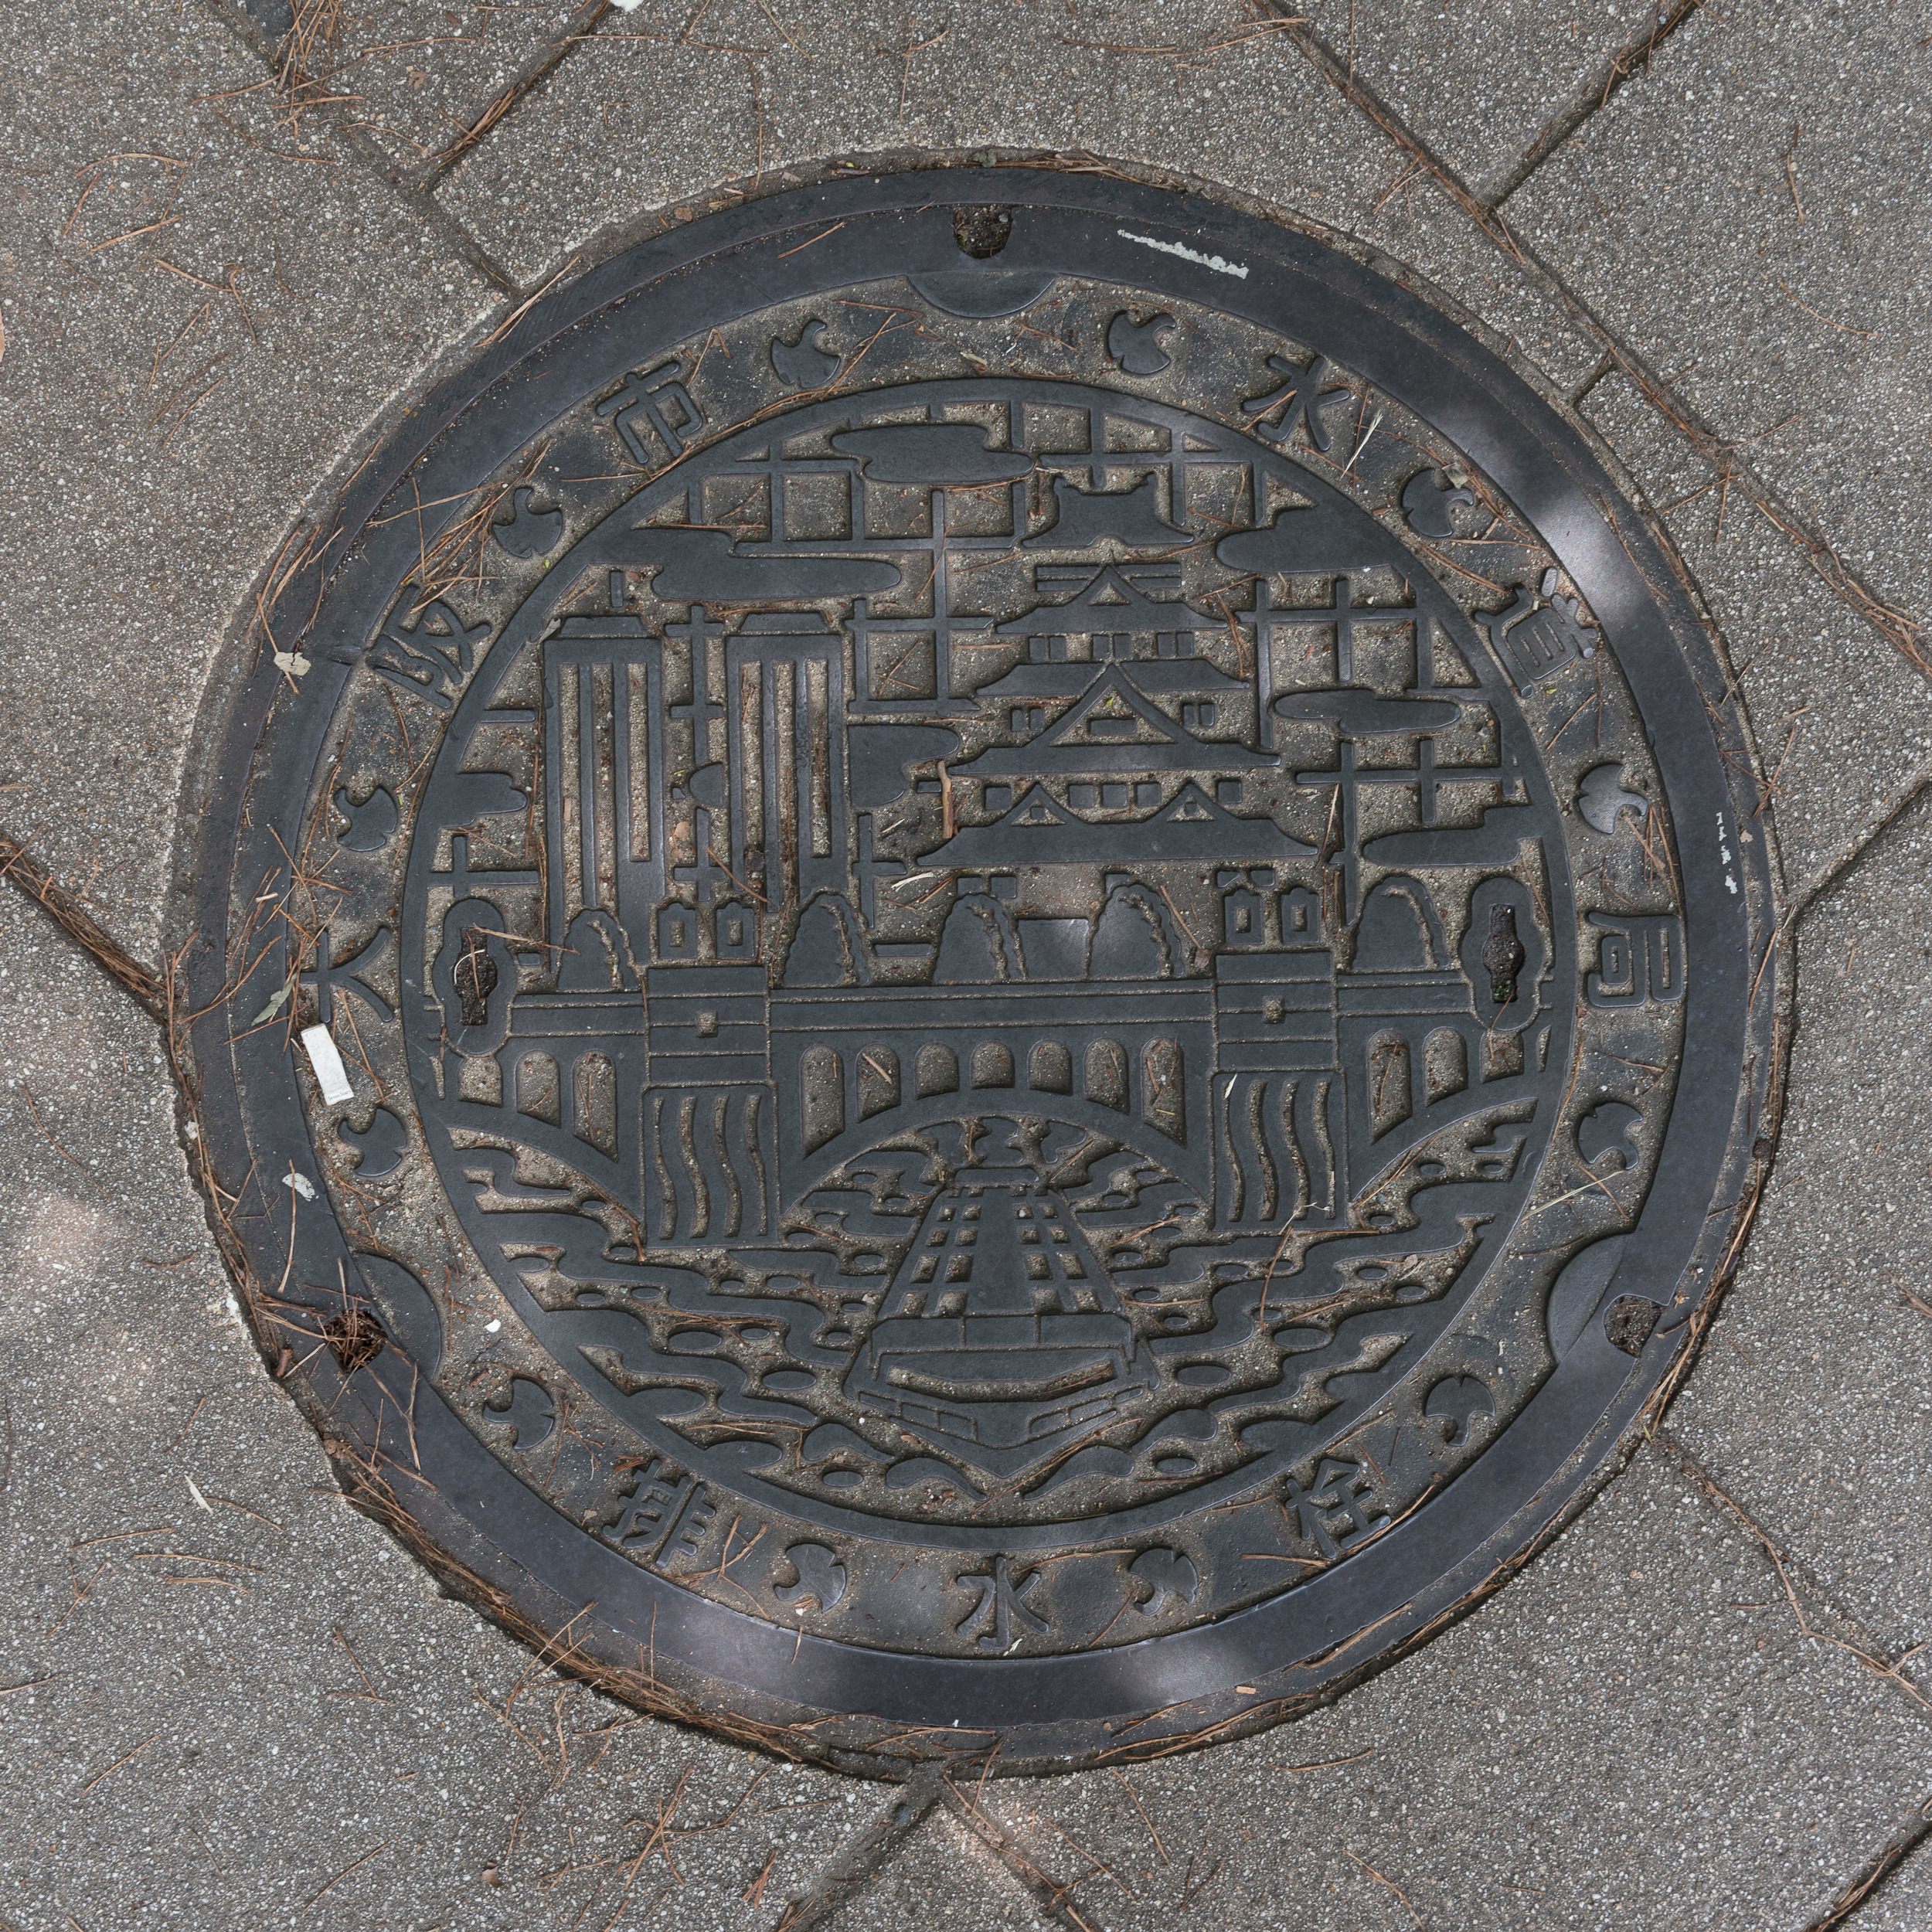 Japan_Manhole-8.jpg